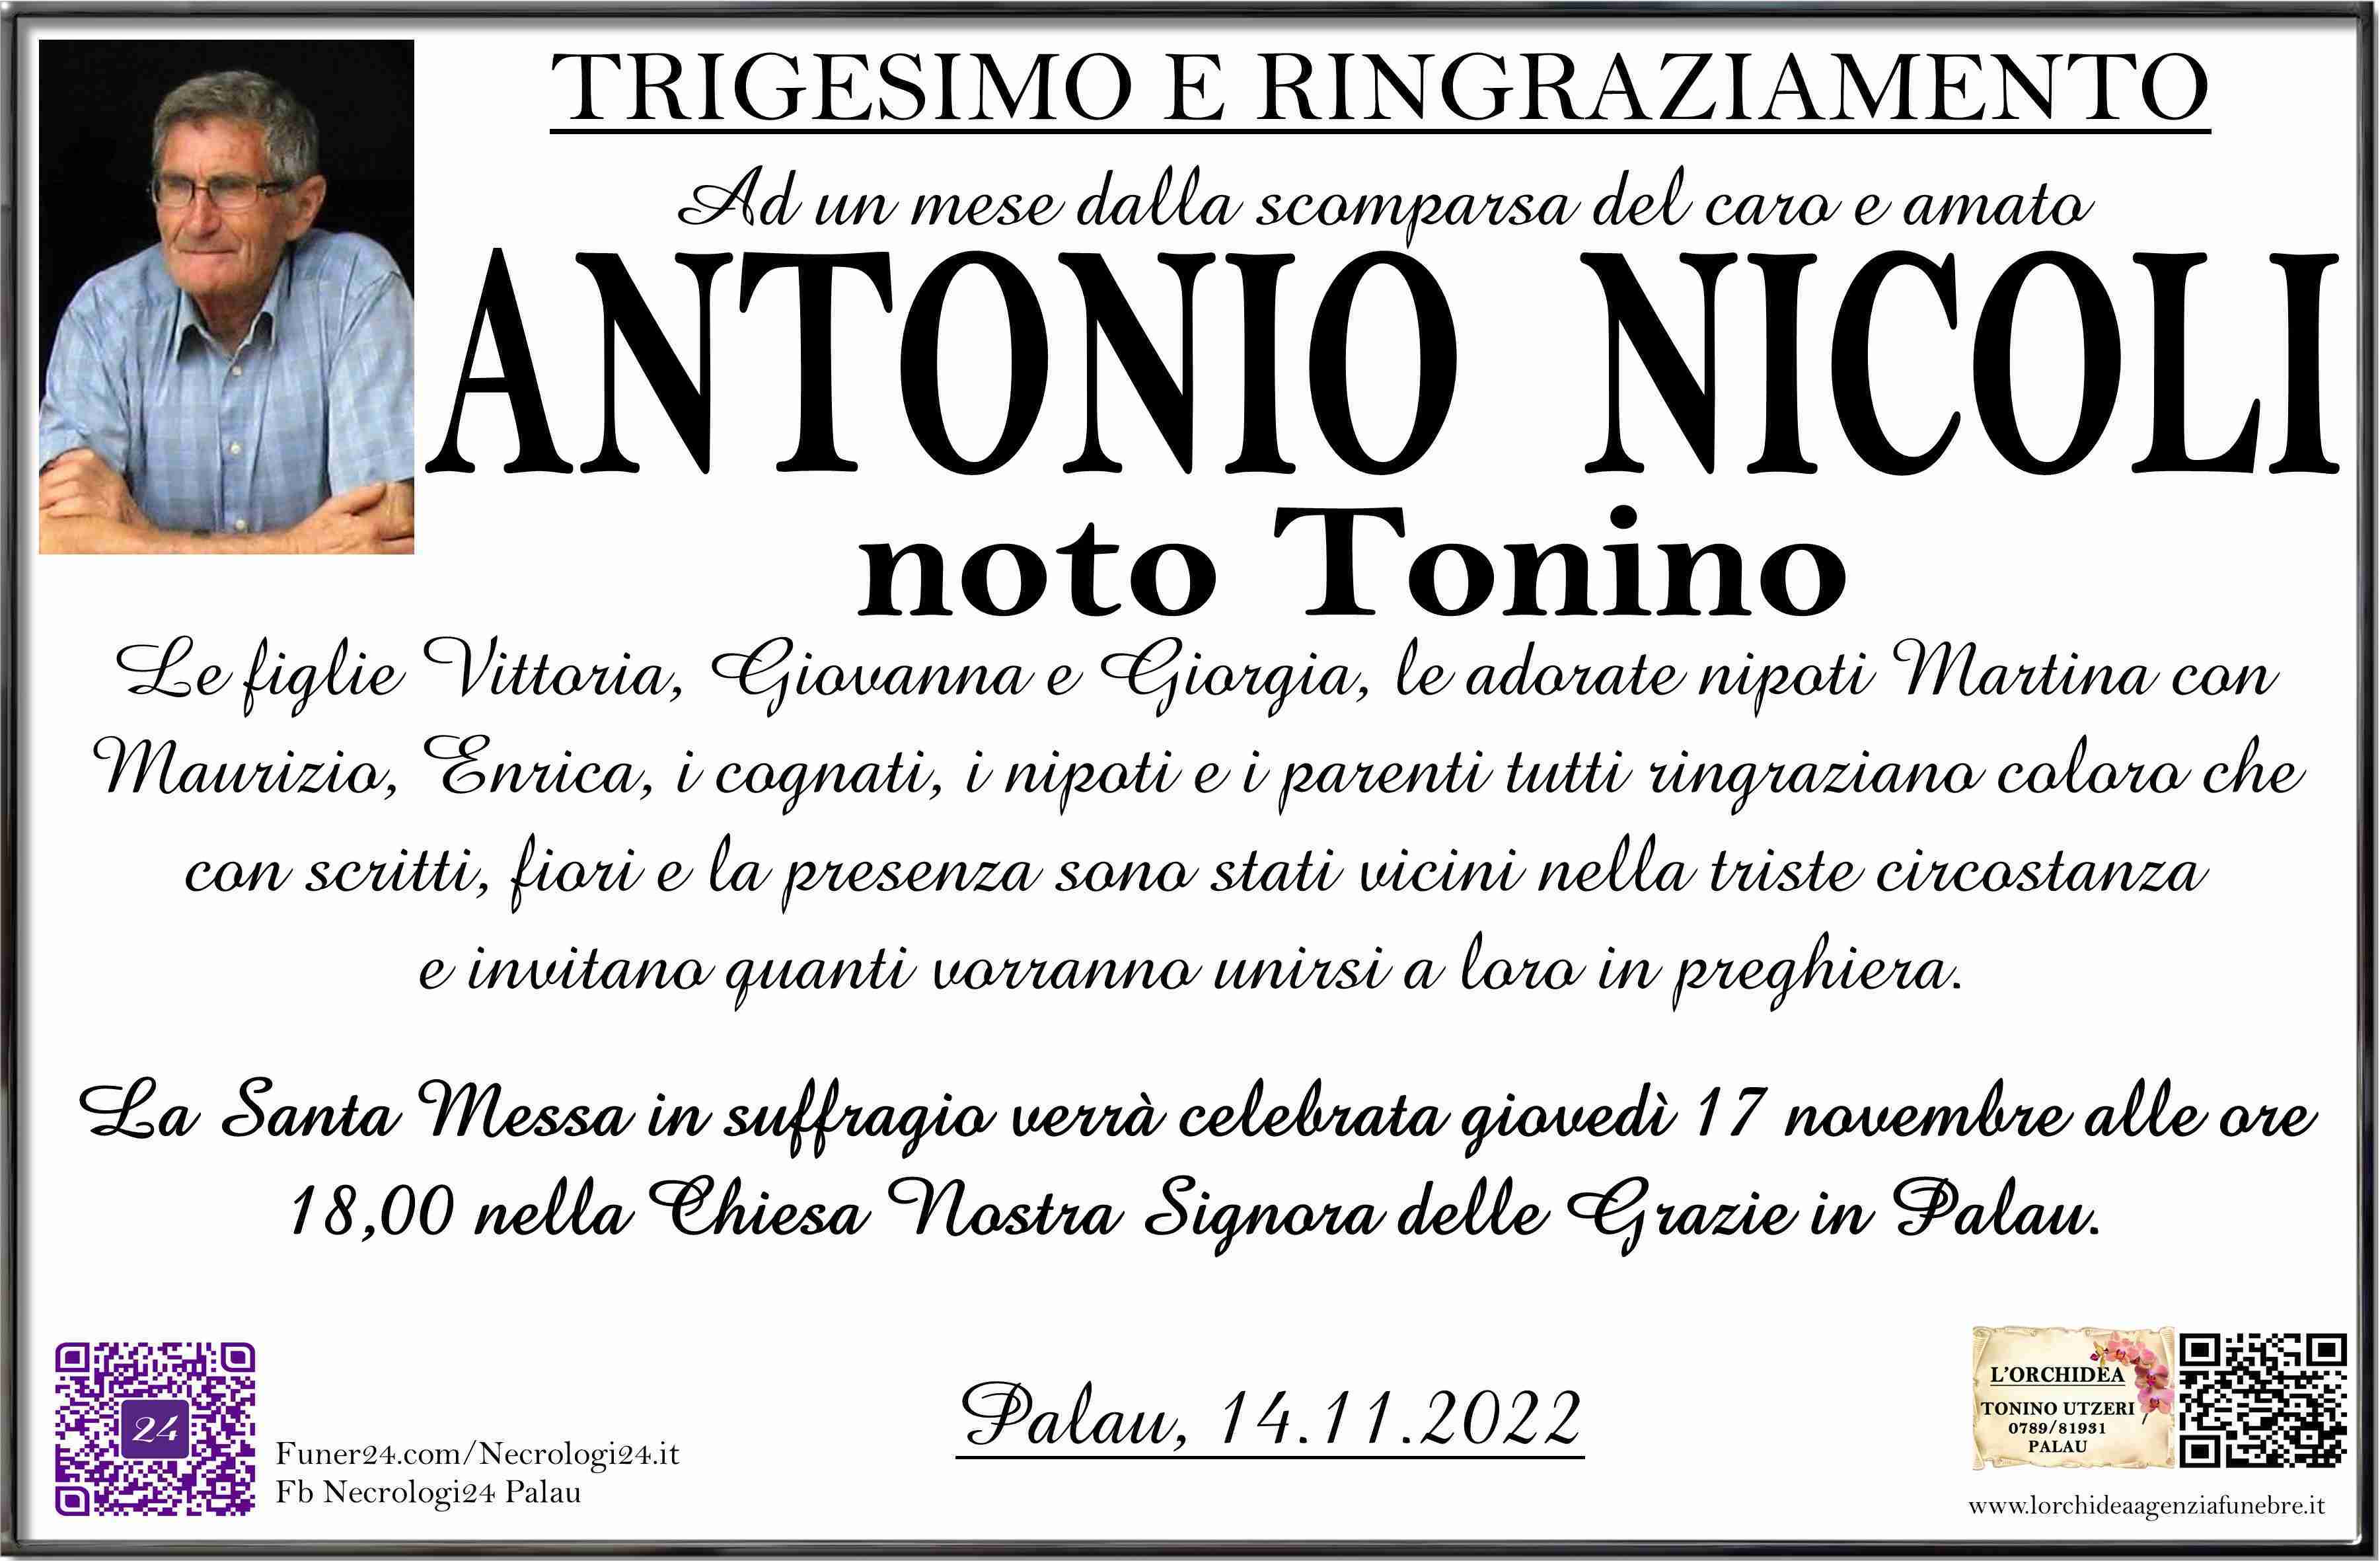 Antonio Nicoli